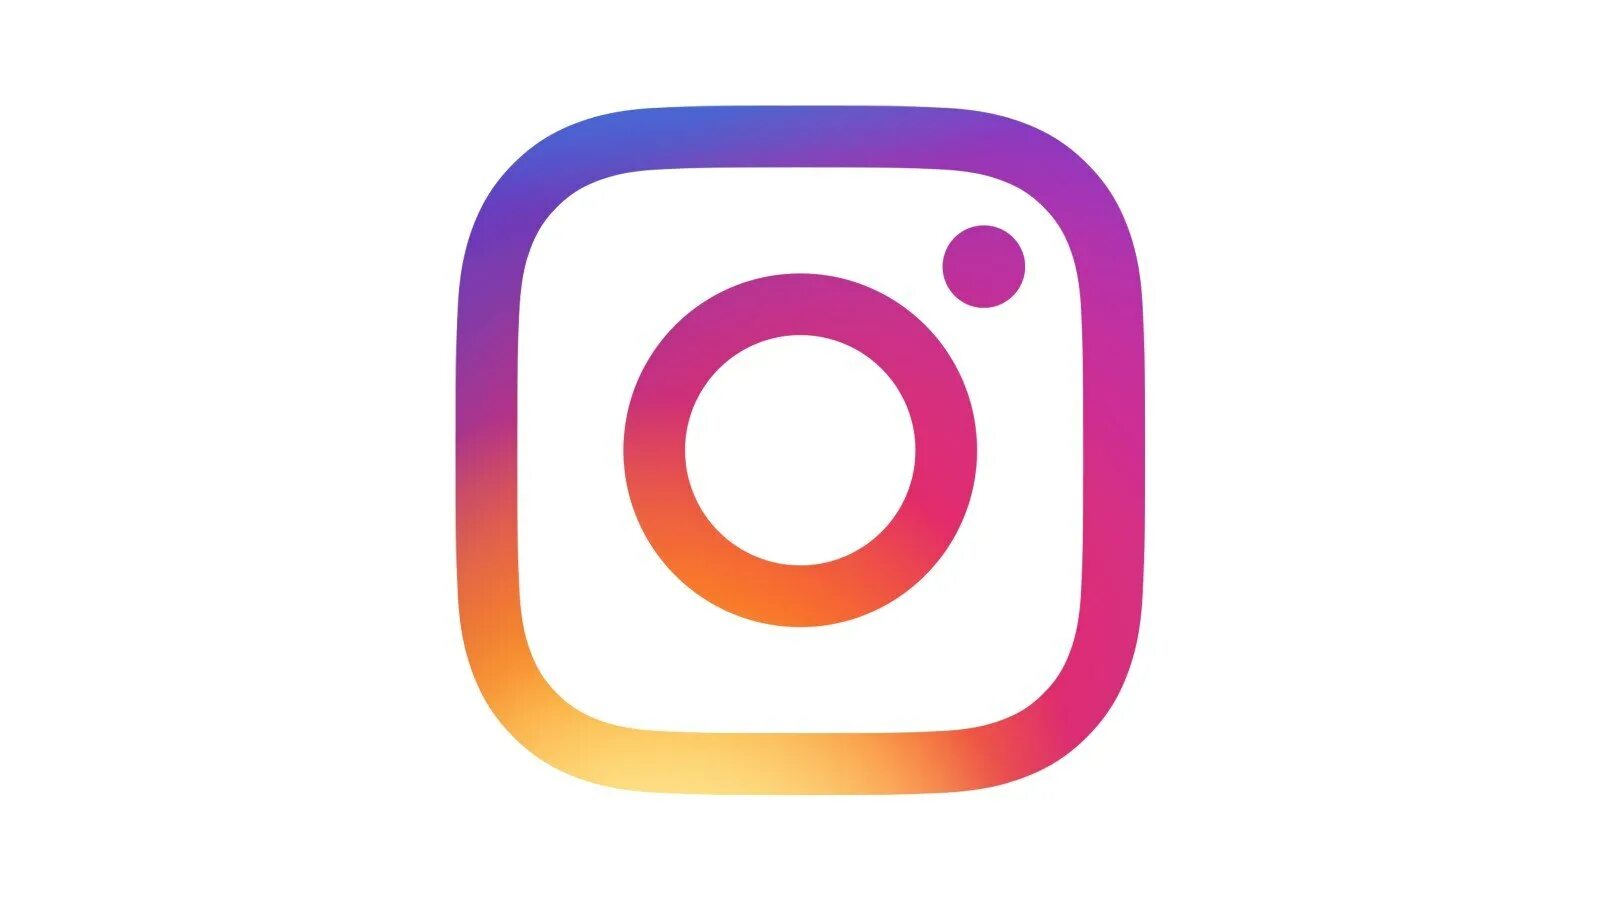 Логотип Instagram. Значок Инстаграм. Инстаграмм без фона. Логотип Инстаграм на прозрачном фоне. Прозрачный фон в инстаграм